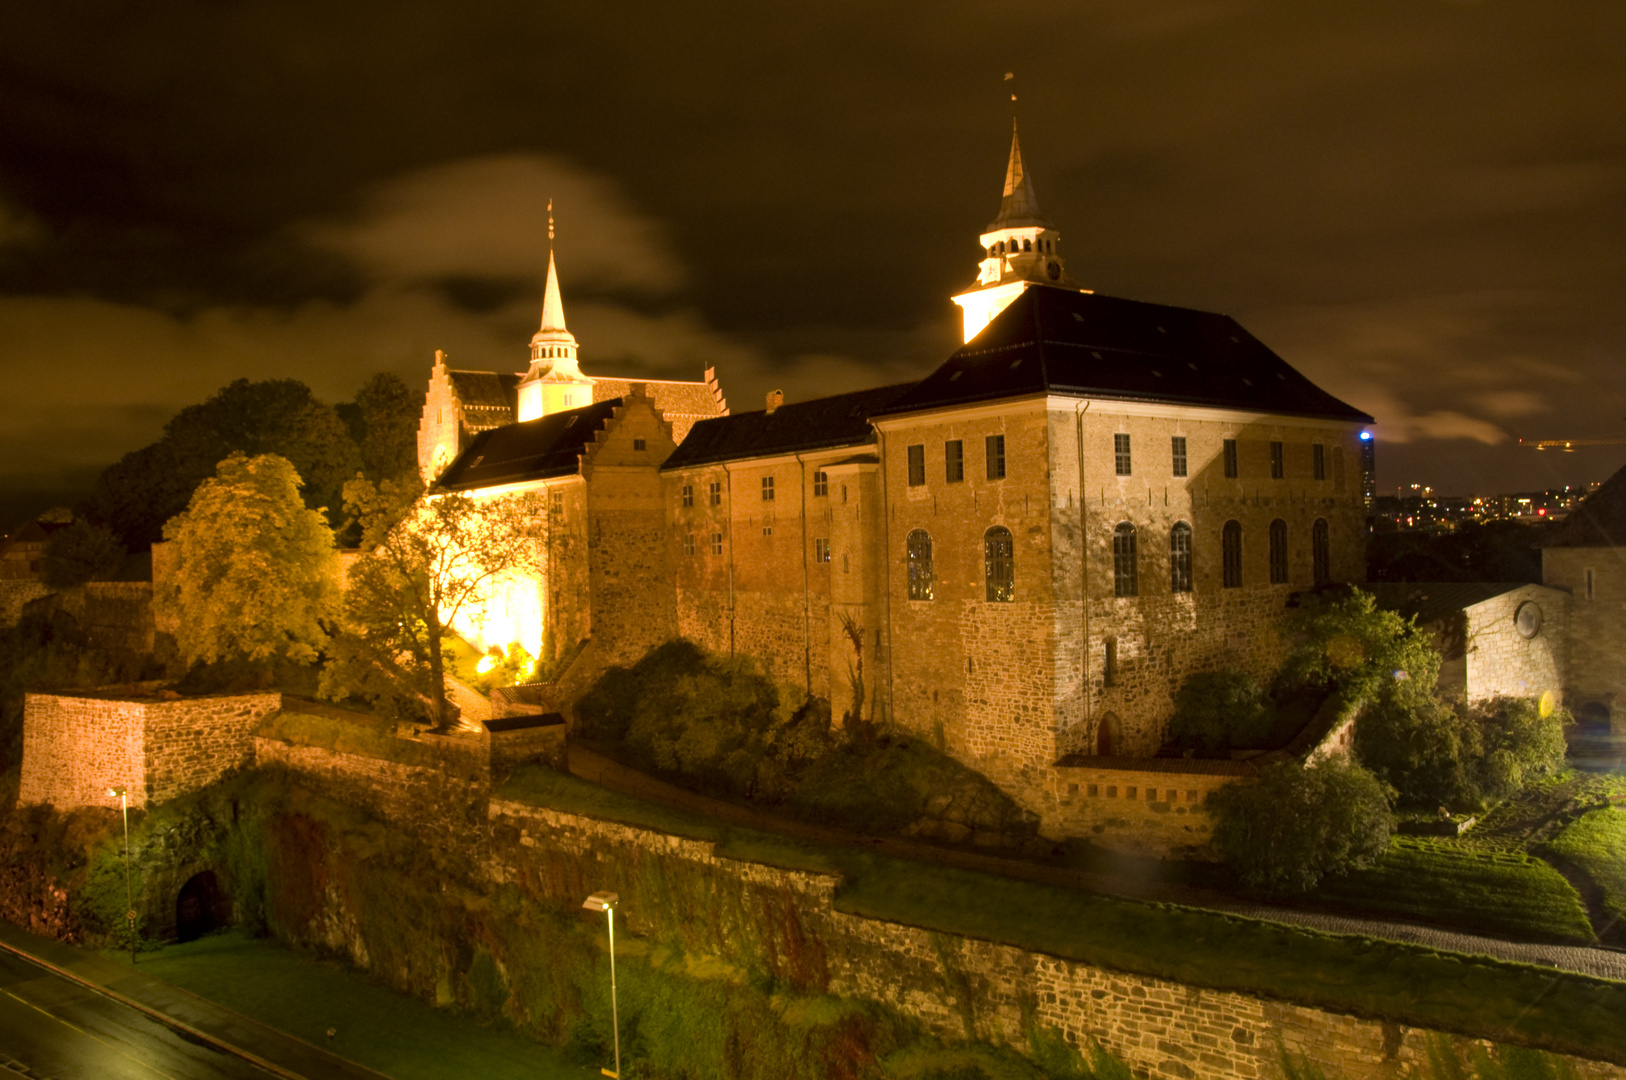 Oslo, Akershus Festung by night